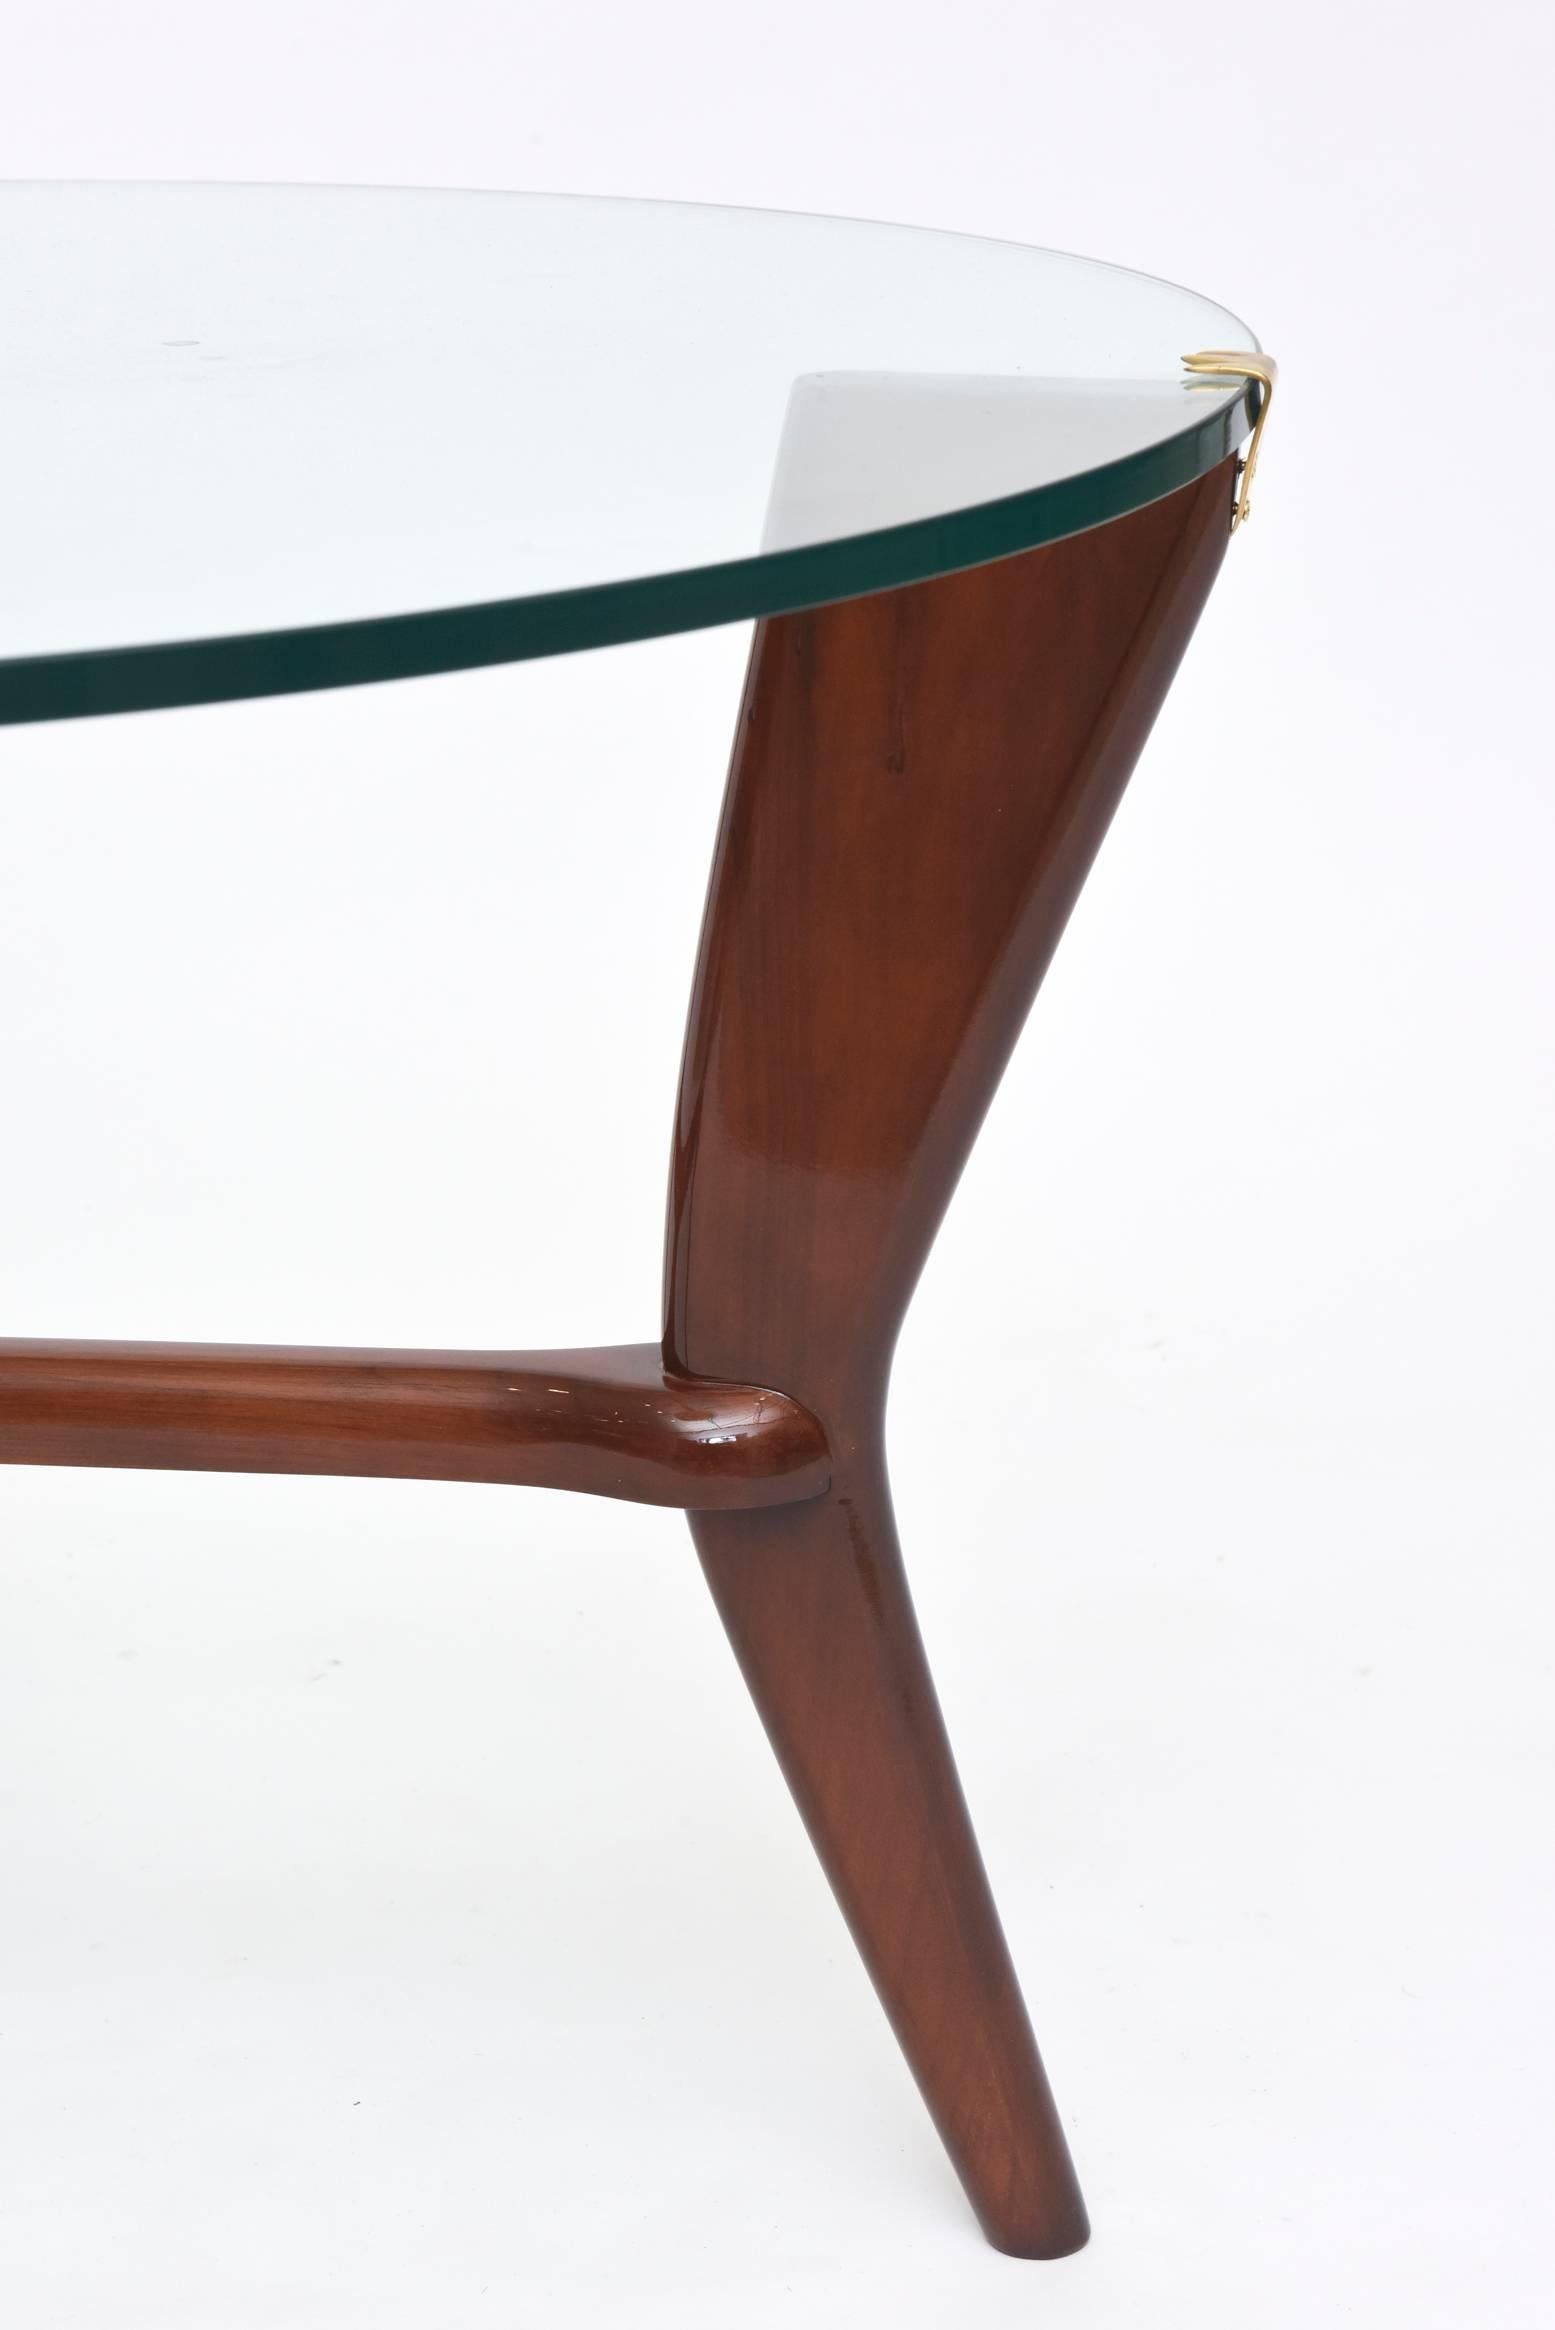 20th Century Midcentury Osvaldo Borsani Italian Modern Walnut, Brass and Glass Table